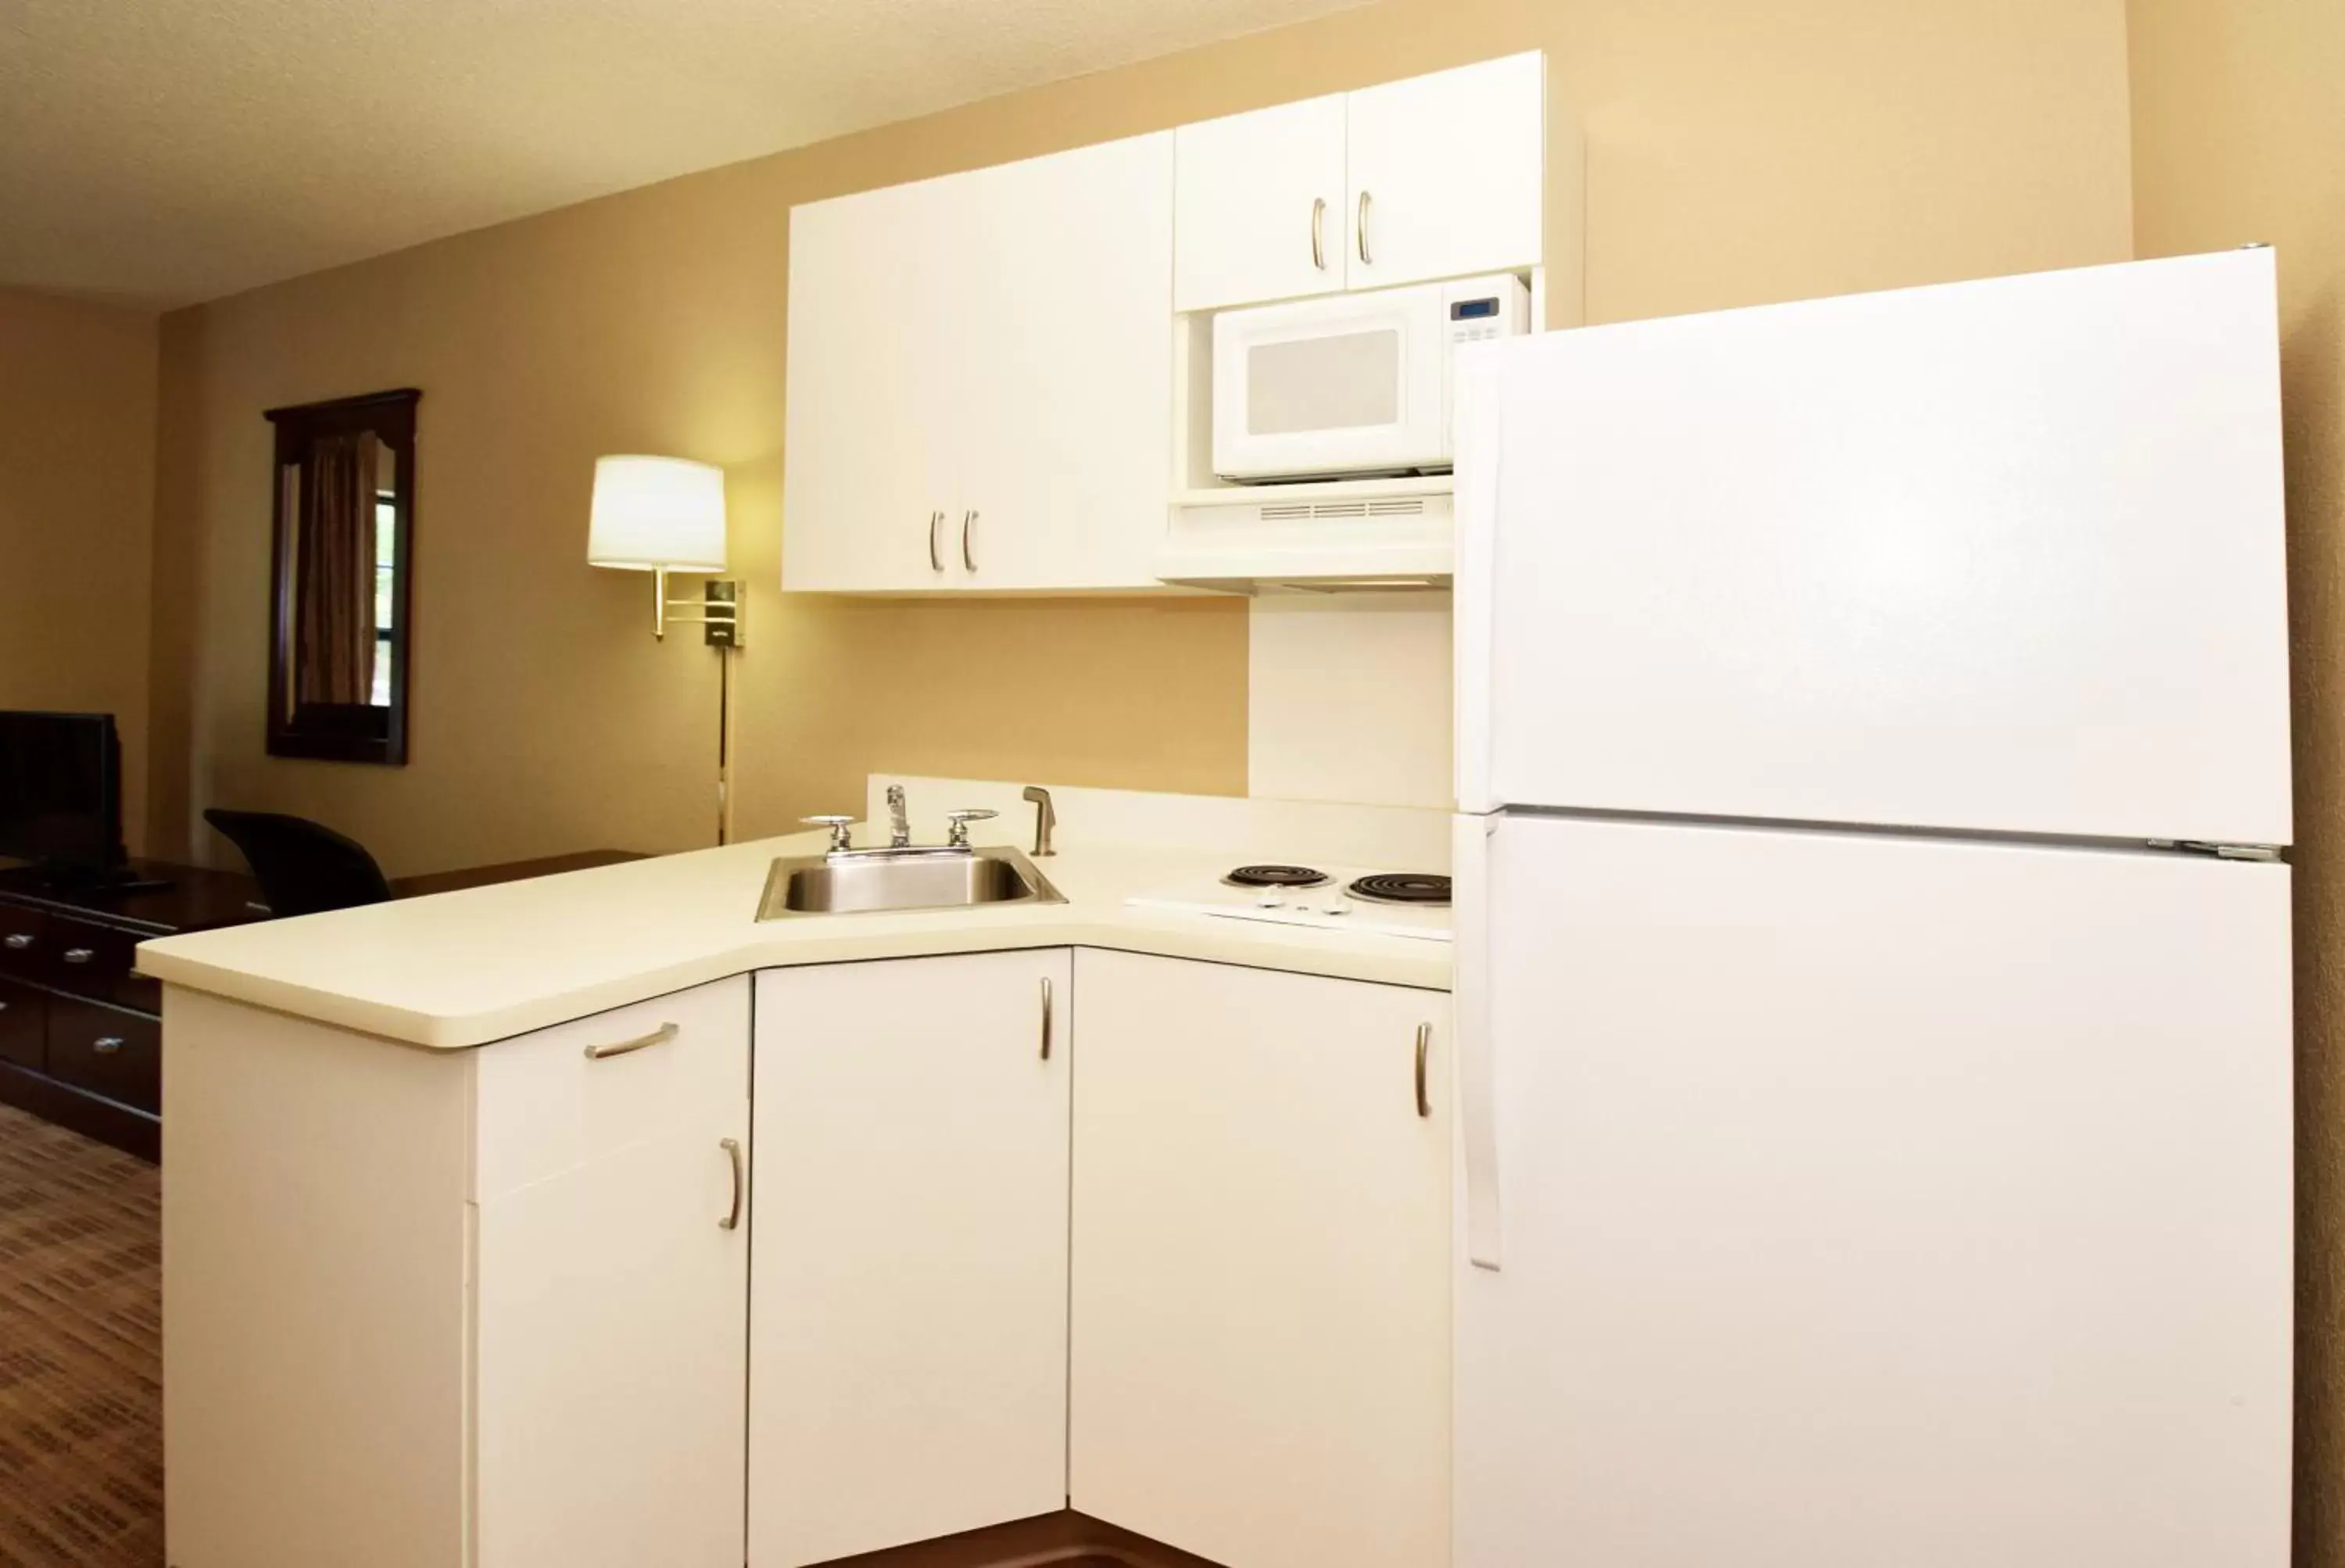 Kitchen or kitchenette, Kitchen/Kitchenette in Extended Stay America Suites - Lynchburg - University Blvd